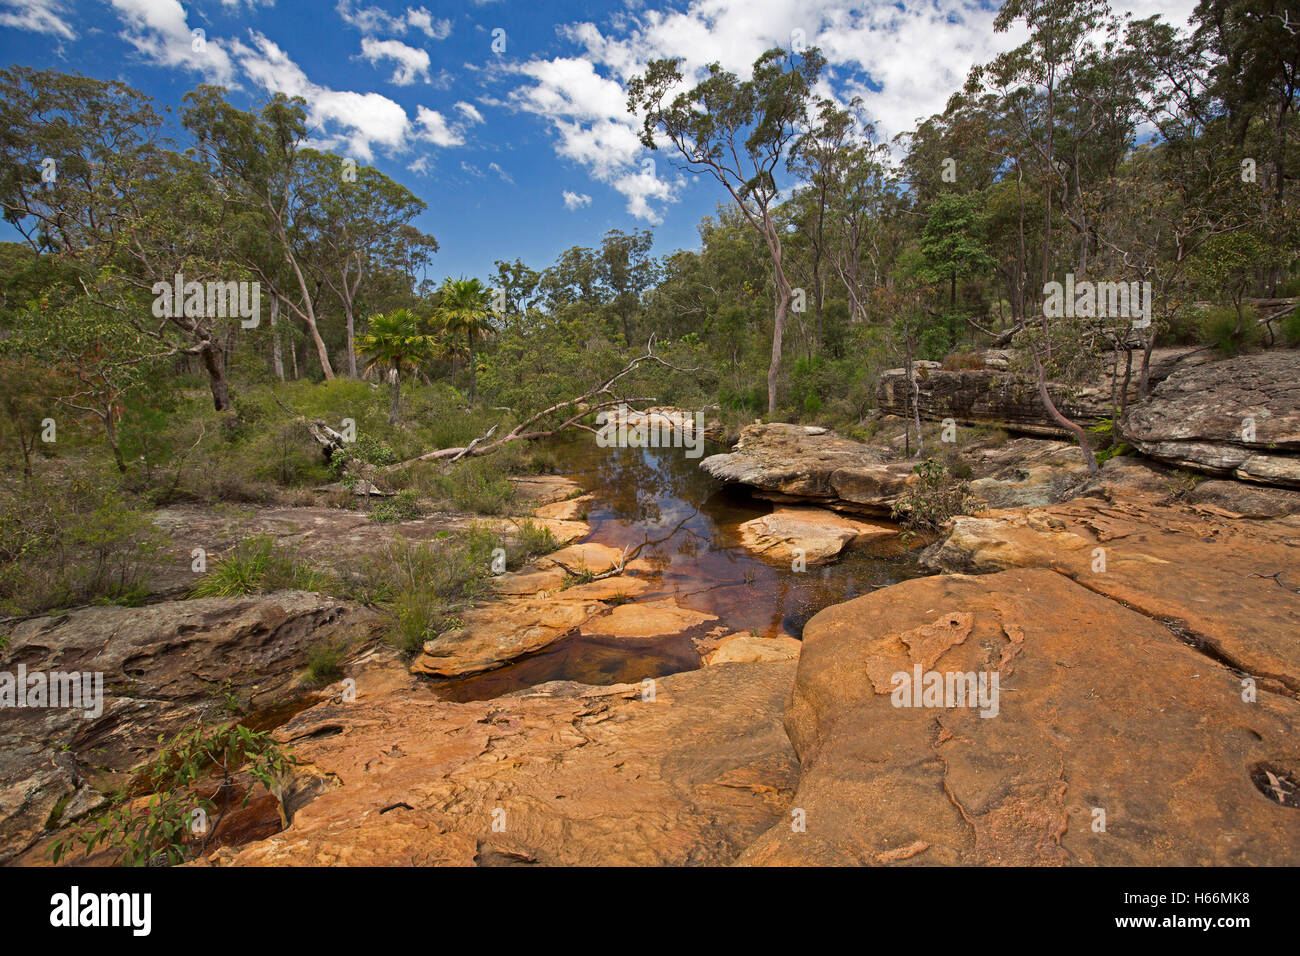 Aust Landschaft, geprägt von erodierten Platten aus rotem Sandsteinfelsen & Wasser der ruhigen Bach grenzt an Eukalyptus Wald & Felsbrocken Stockfoto